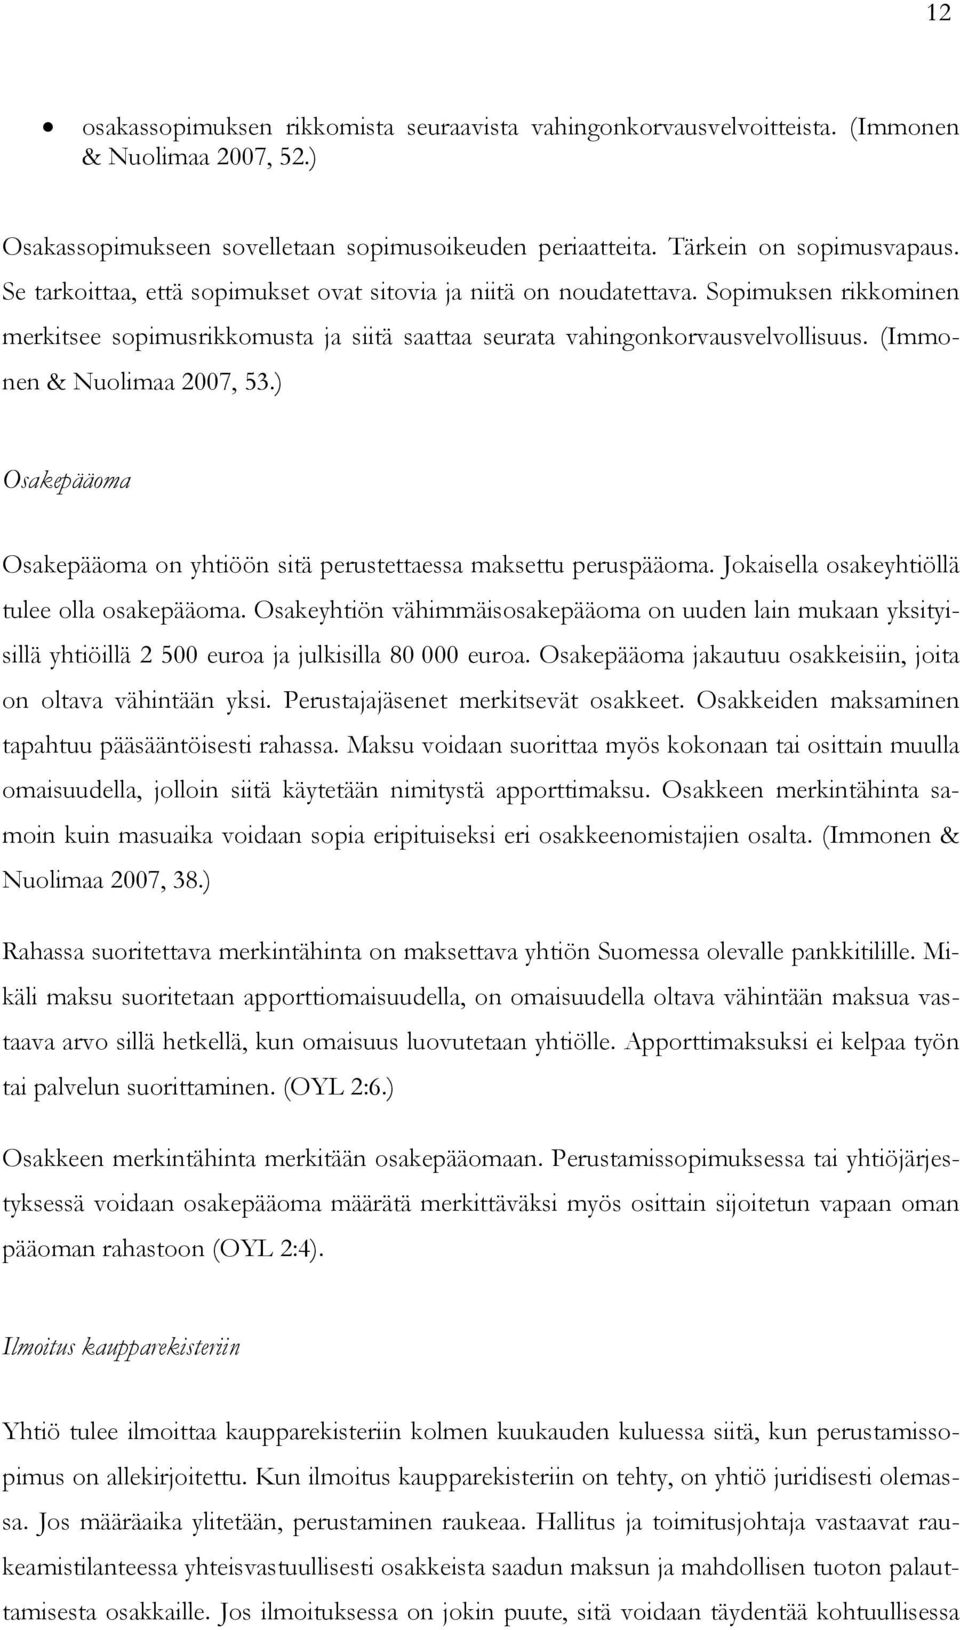 (Immonen & Nuolimaa 2007, 53.) Osakepääoma Osakepääoma on yhtiöön sitä perustettaessa maksettu peruspääoma. Jokaisella osakeyhtiöllä tulee olla osakepääoma.